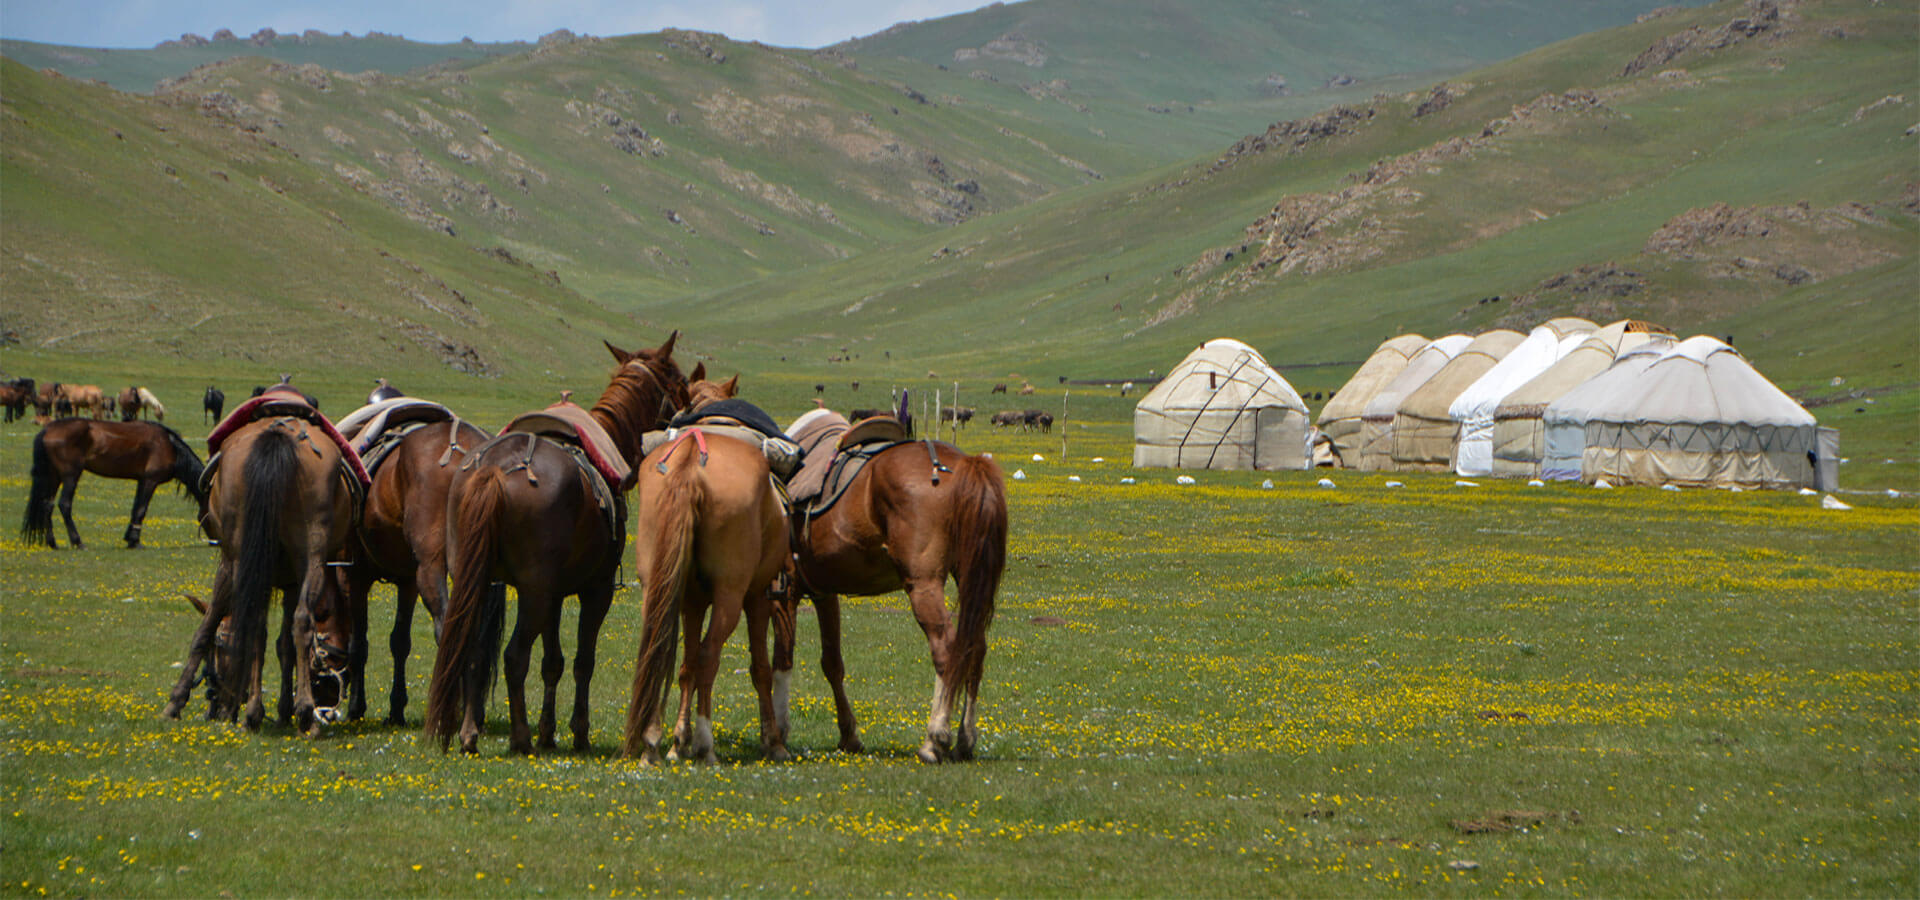 Rando, vtt, rando à cheval kirghizistan, voyage au kirghizistan, trek vtt kirghizistan, voyage en kirghizie, trek kirghizistan